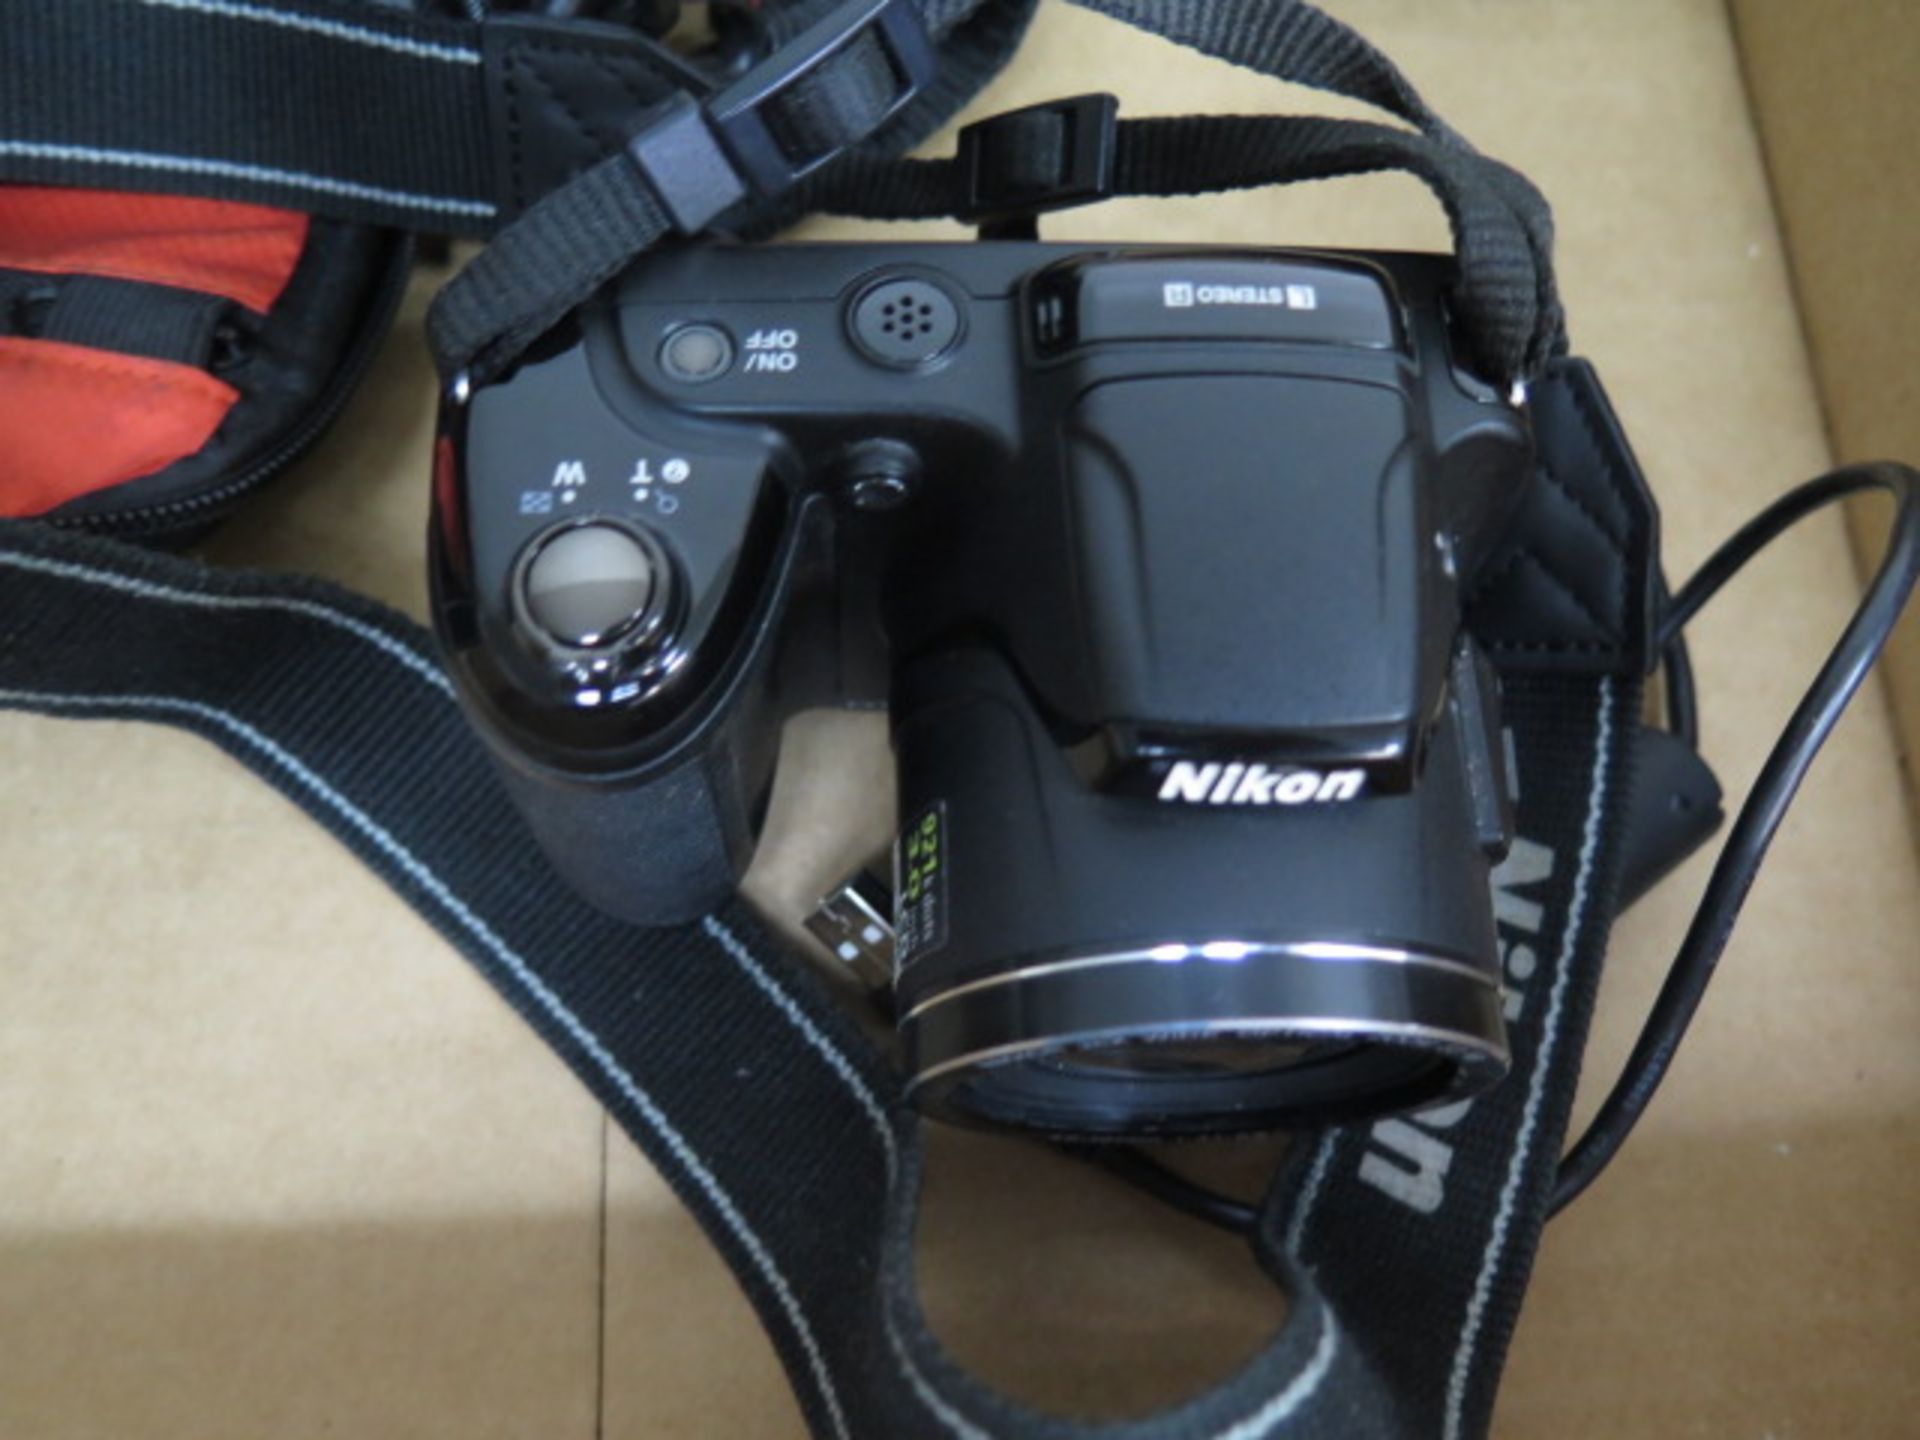 Nikon Coolpix L810 Digital Camera - Image 2 of 3